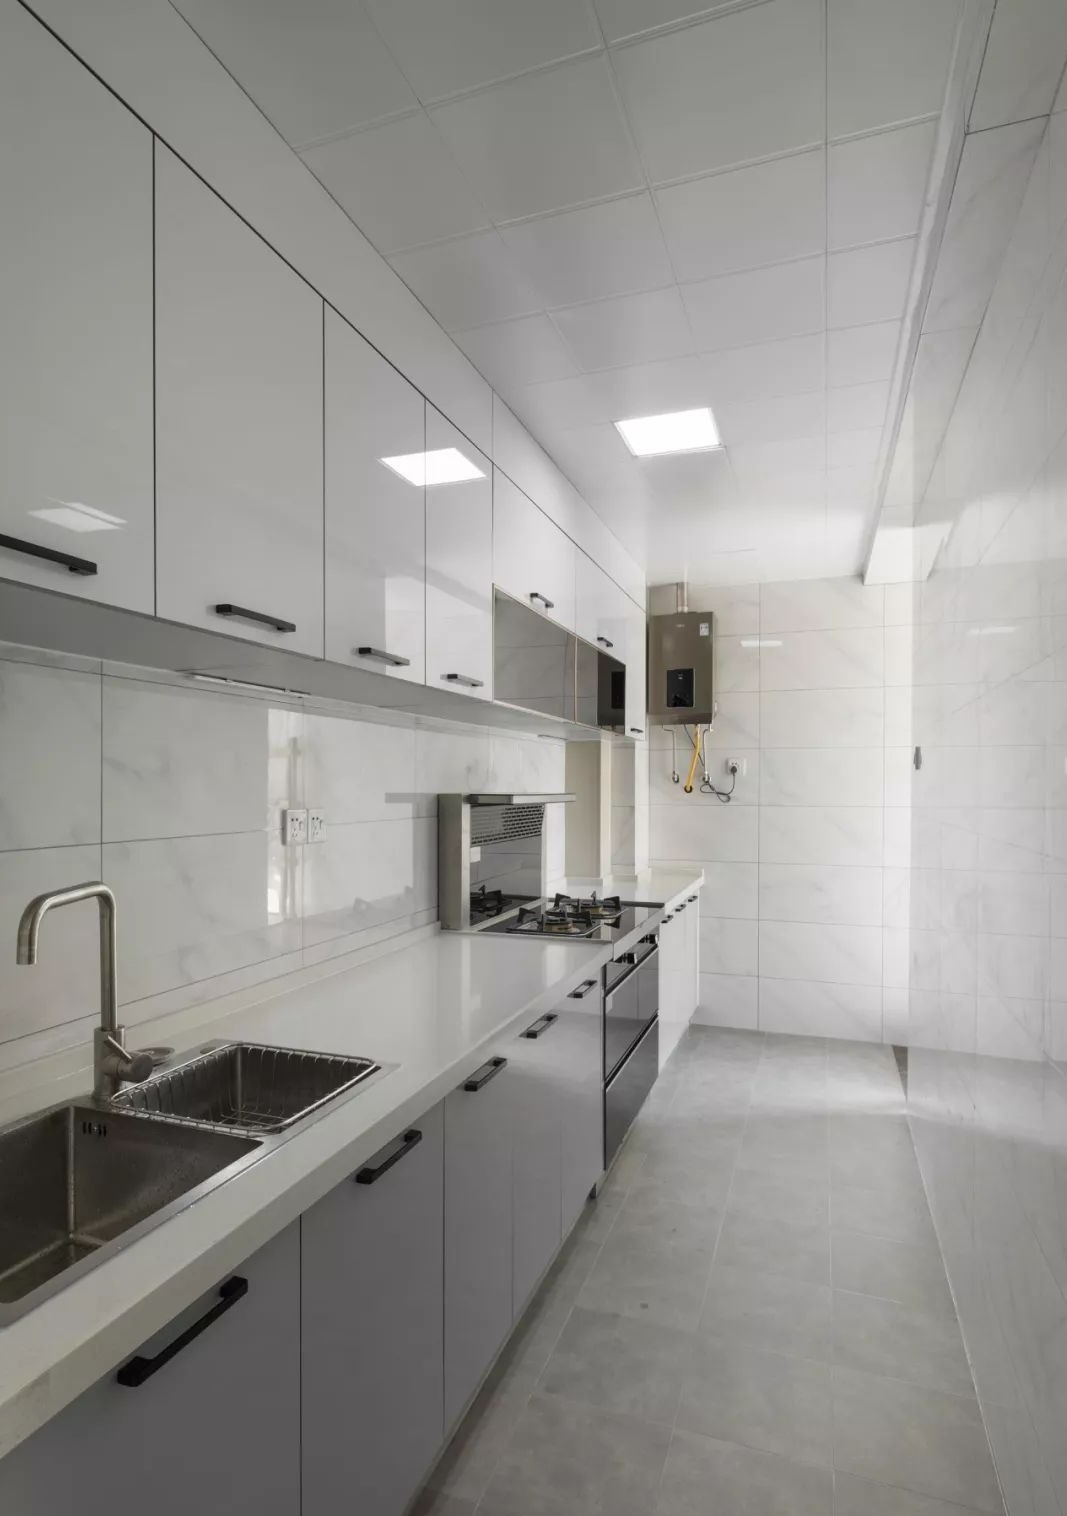 厨房以浅灰为主色,采用了灰白色的橱柜设计,白色的大理石显得厨房干净